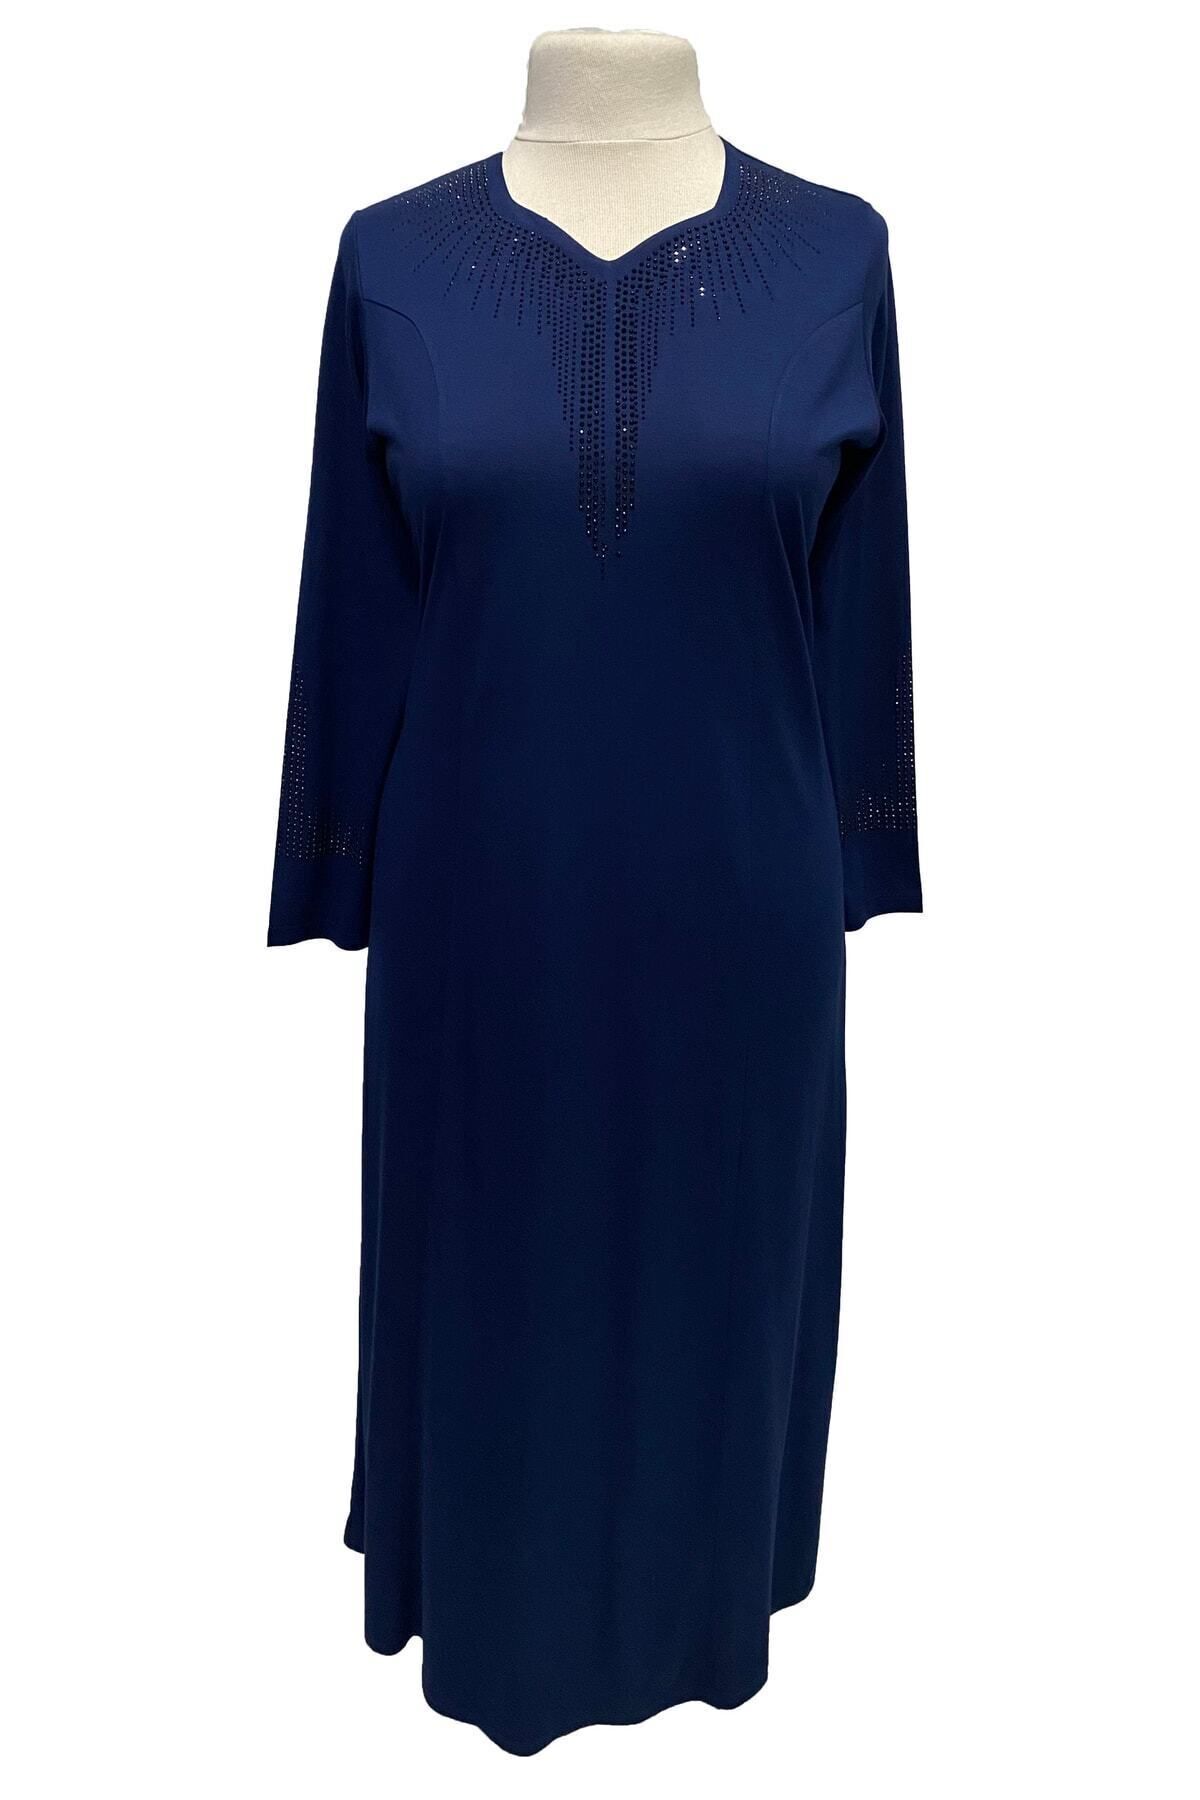 Giyinen Mağazaları Mavi Seda Beşgen Yaka Taş Baskılı Kulplu Anne Penye Elbise